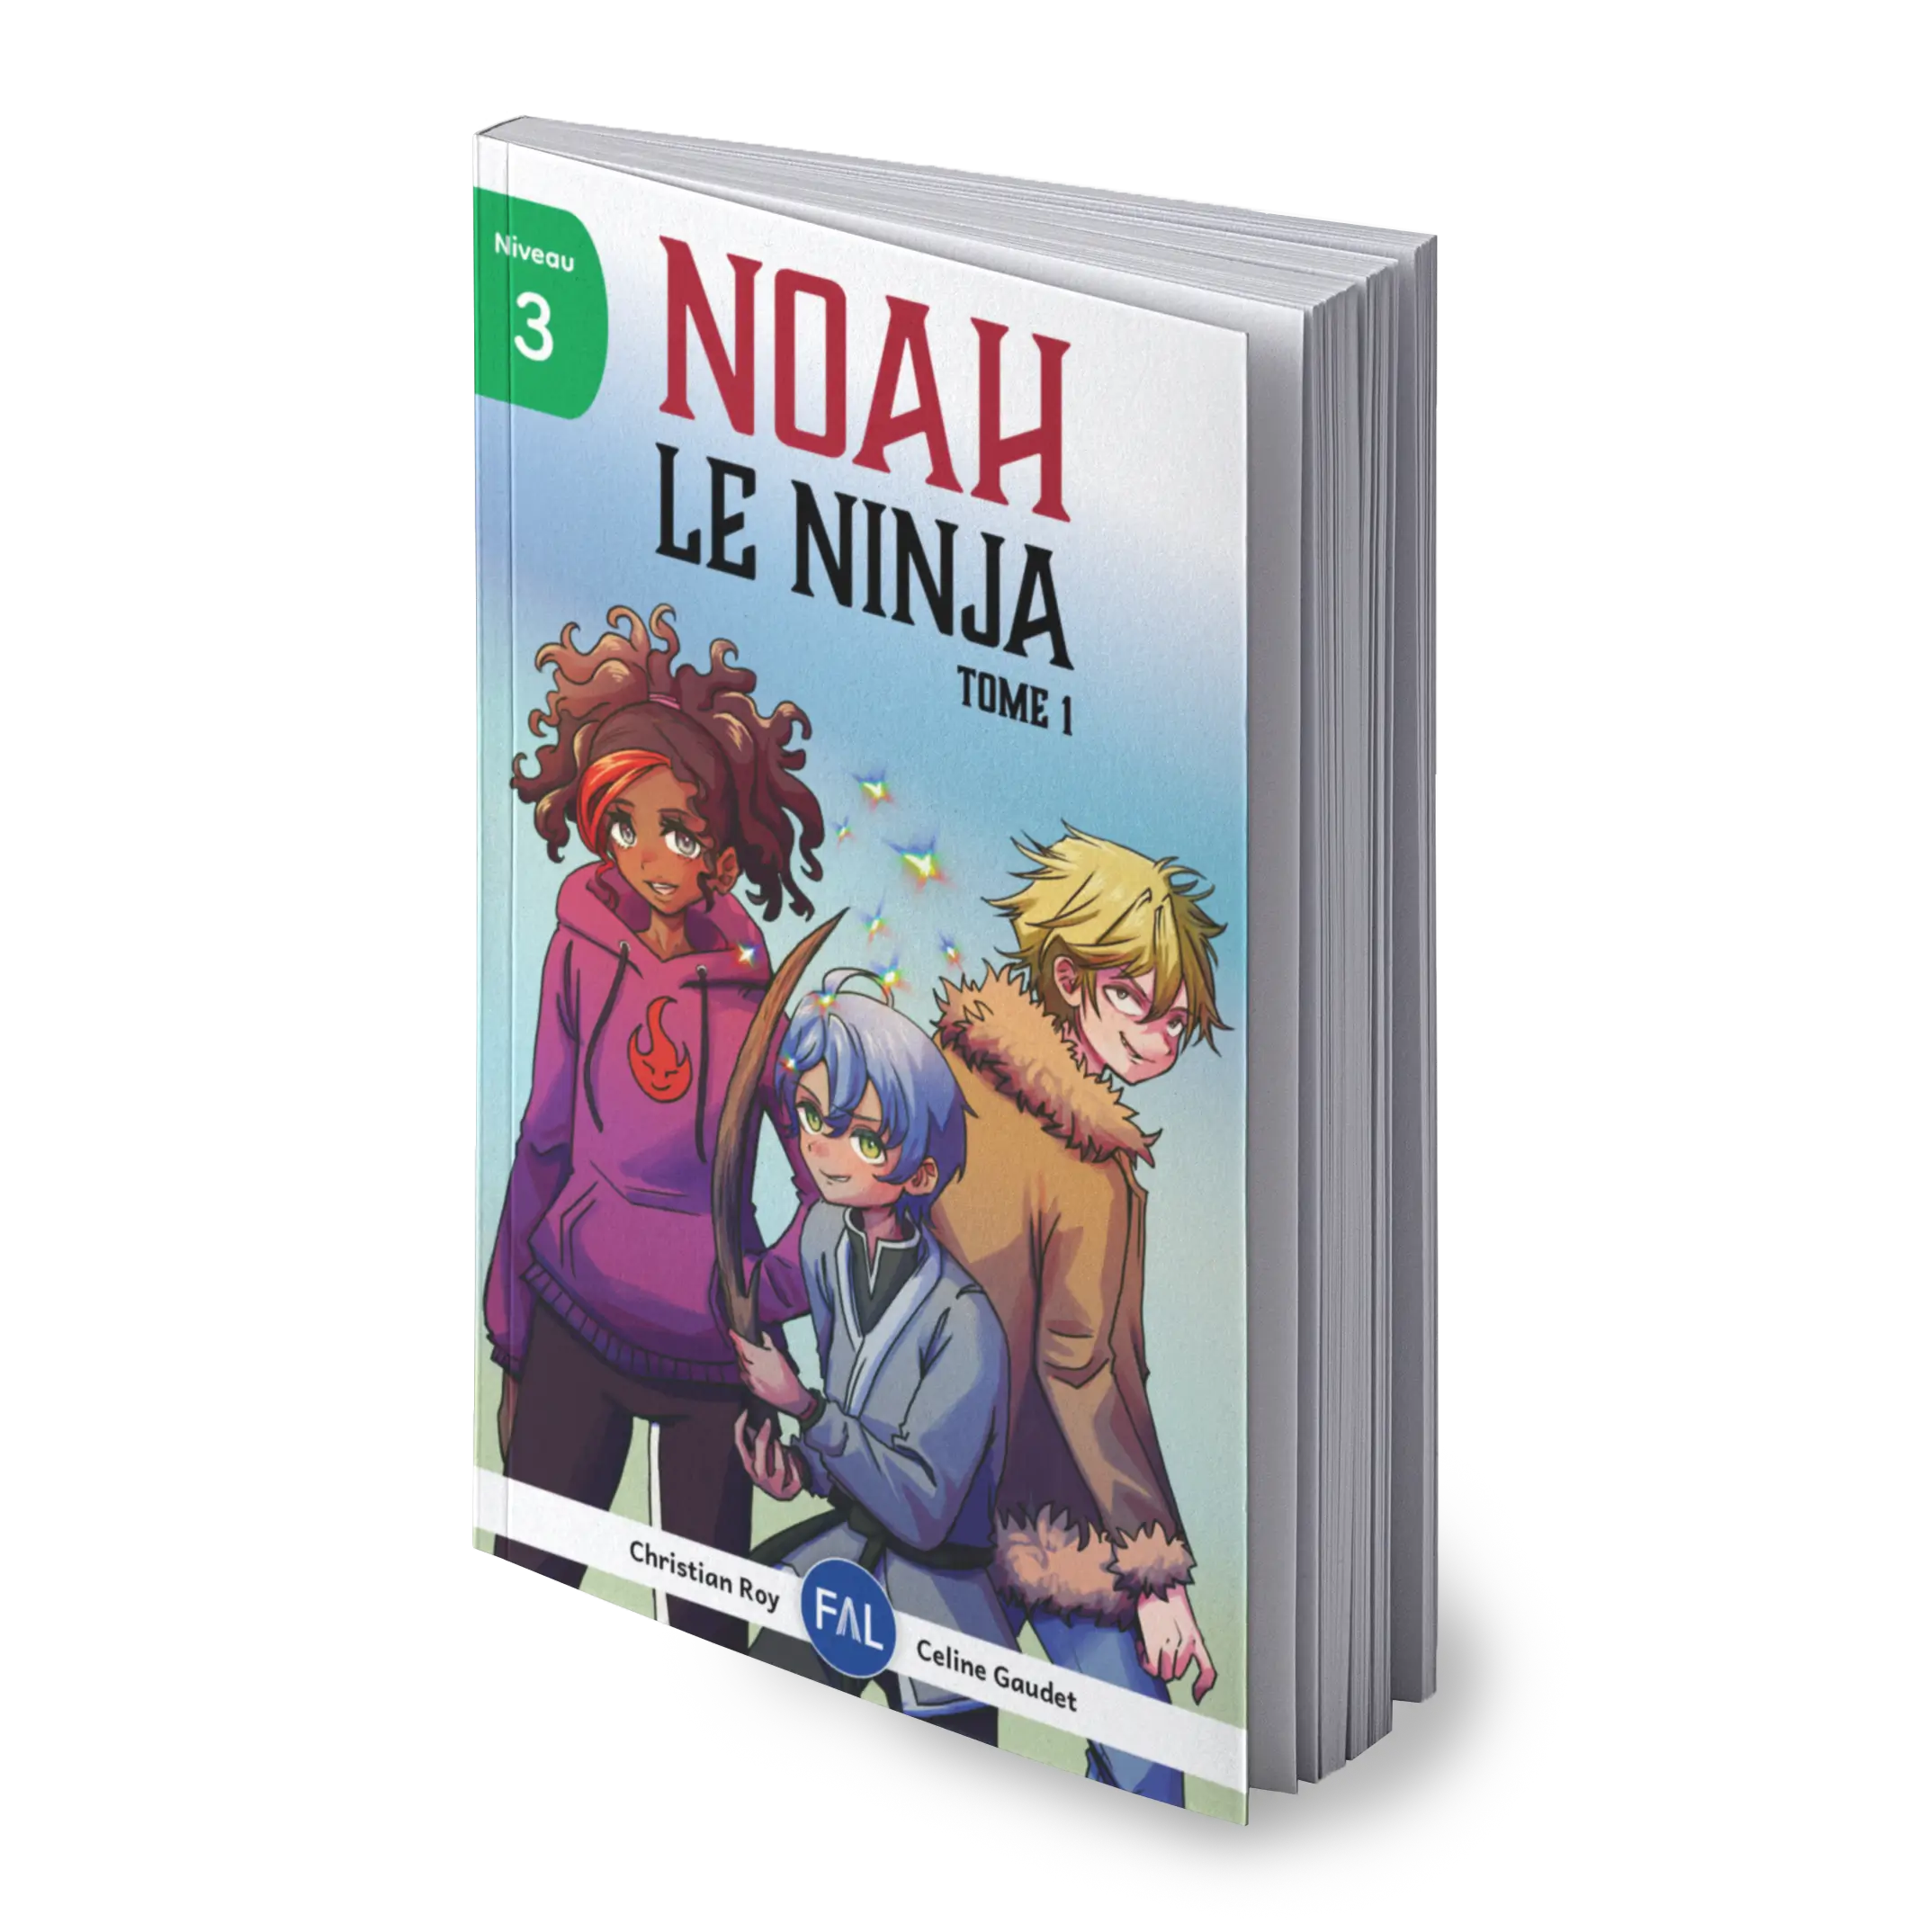 Noah le ninja, un livre captivant et mature, écrit avec un vocabulaire simple et des phrases courtes